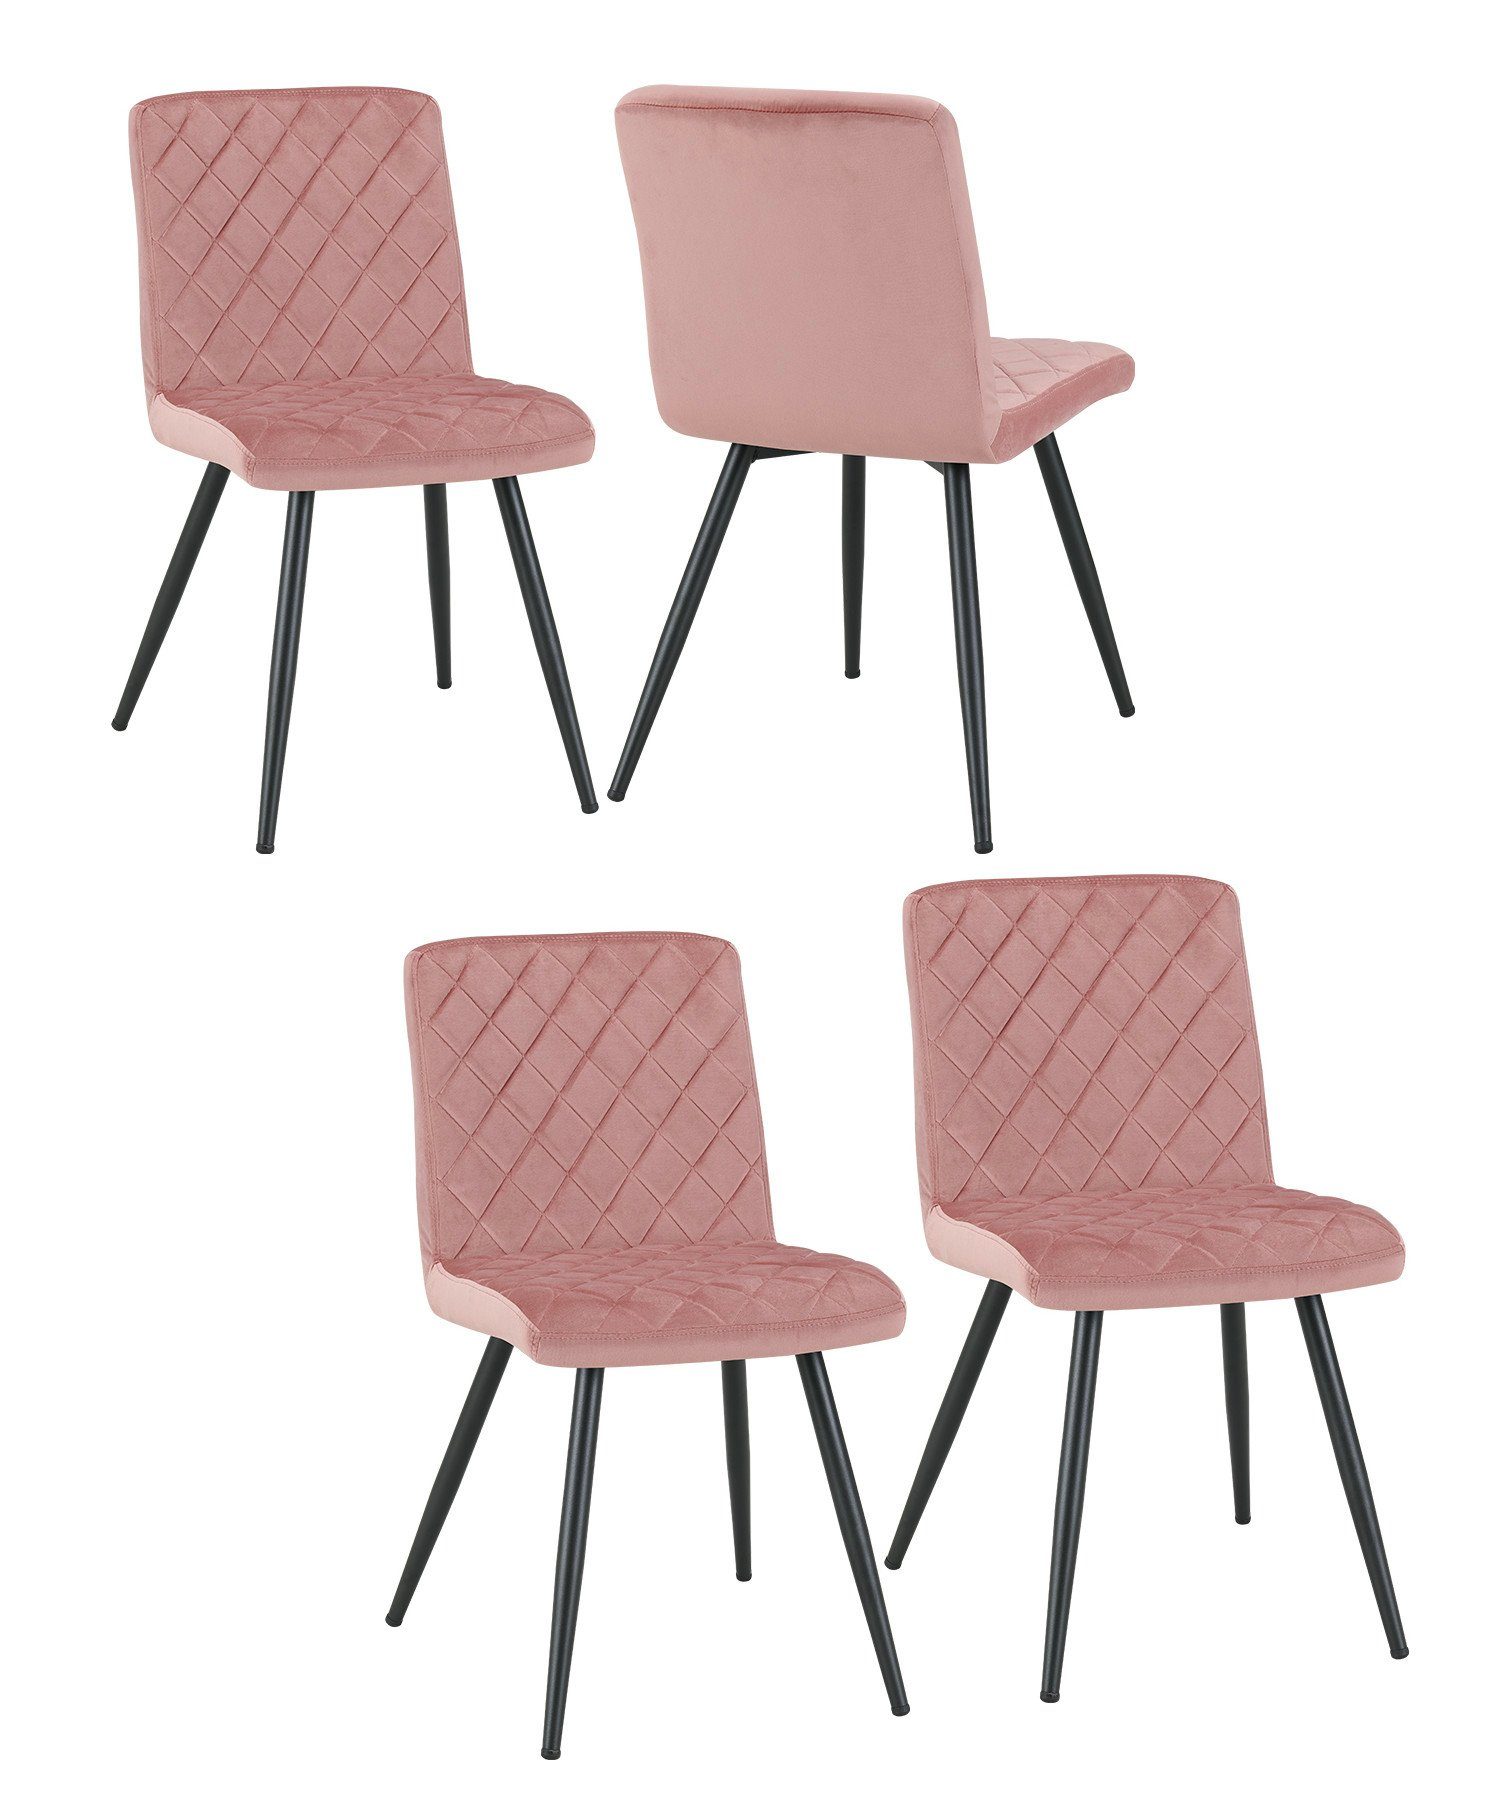 Duhome Esszimmerstuhl, 4er Set Esszimmerstuhl Polsterstuhl Stoff Samt Stuhl  gesteppt Metallbeine online kaufen | OTTO